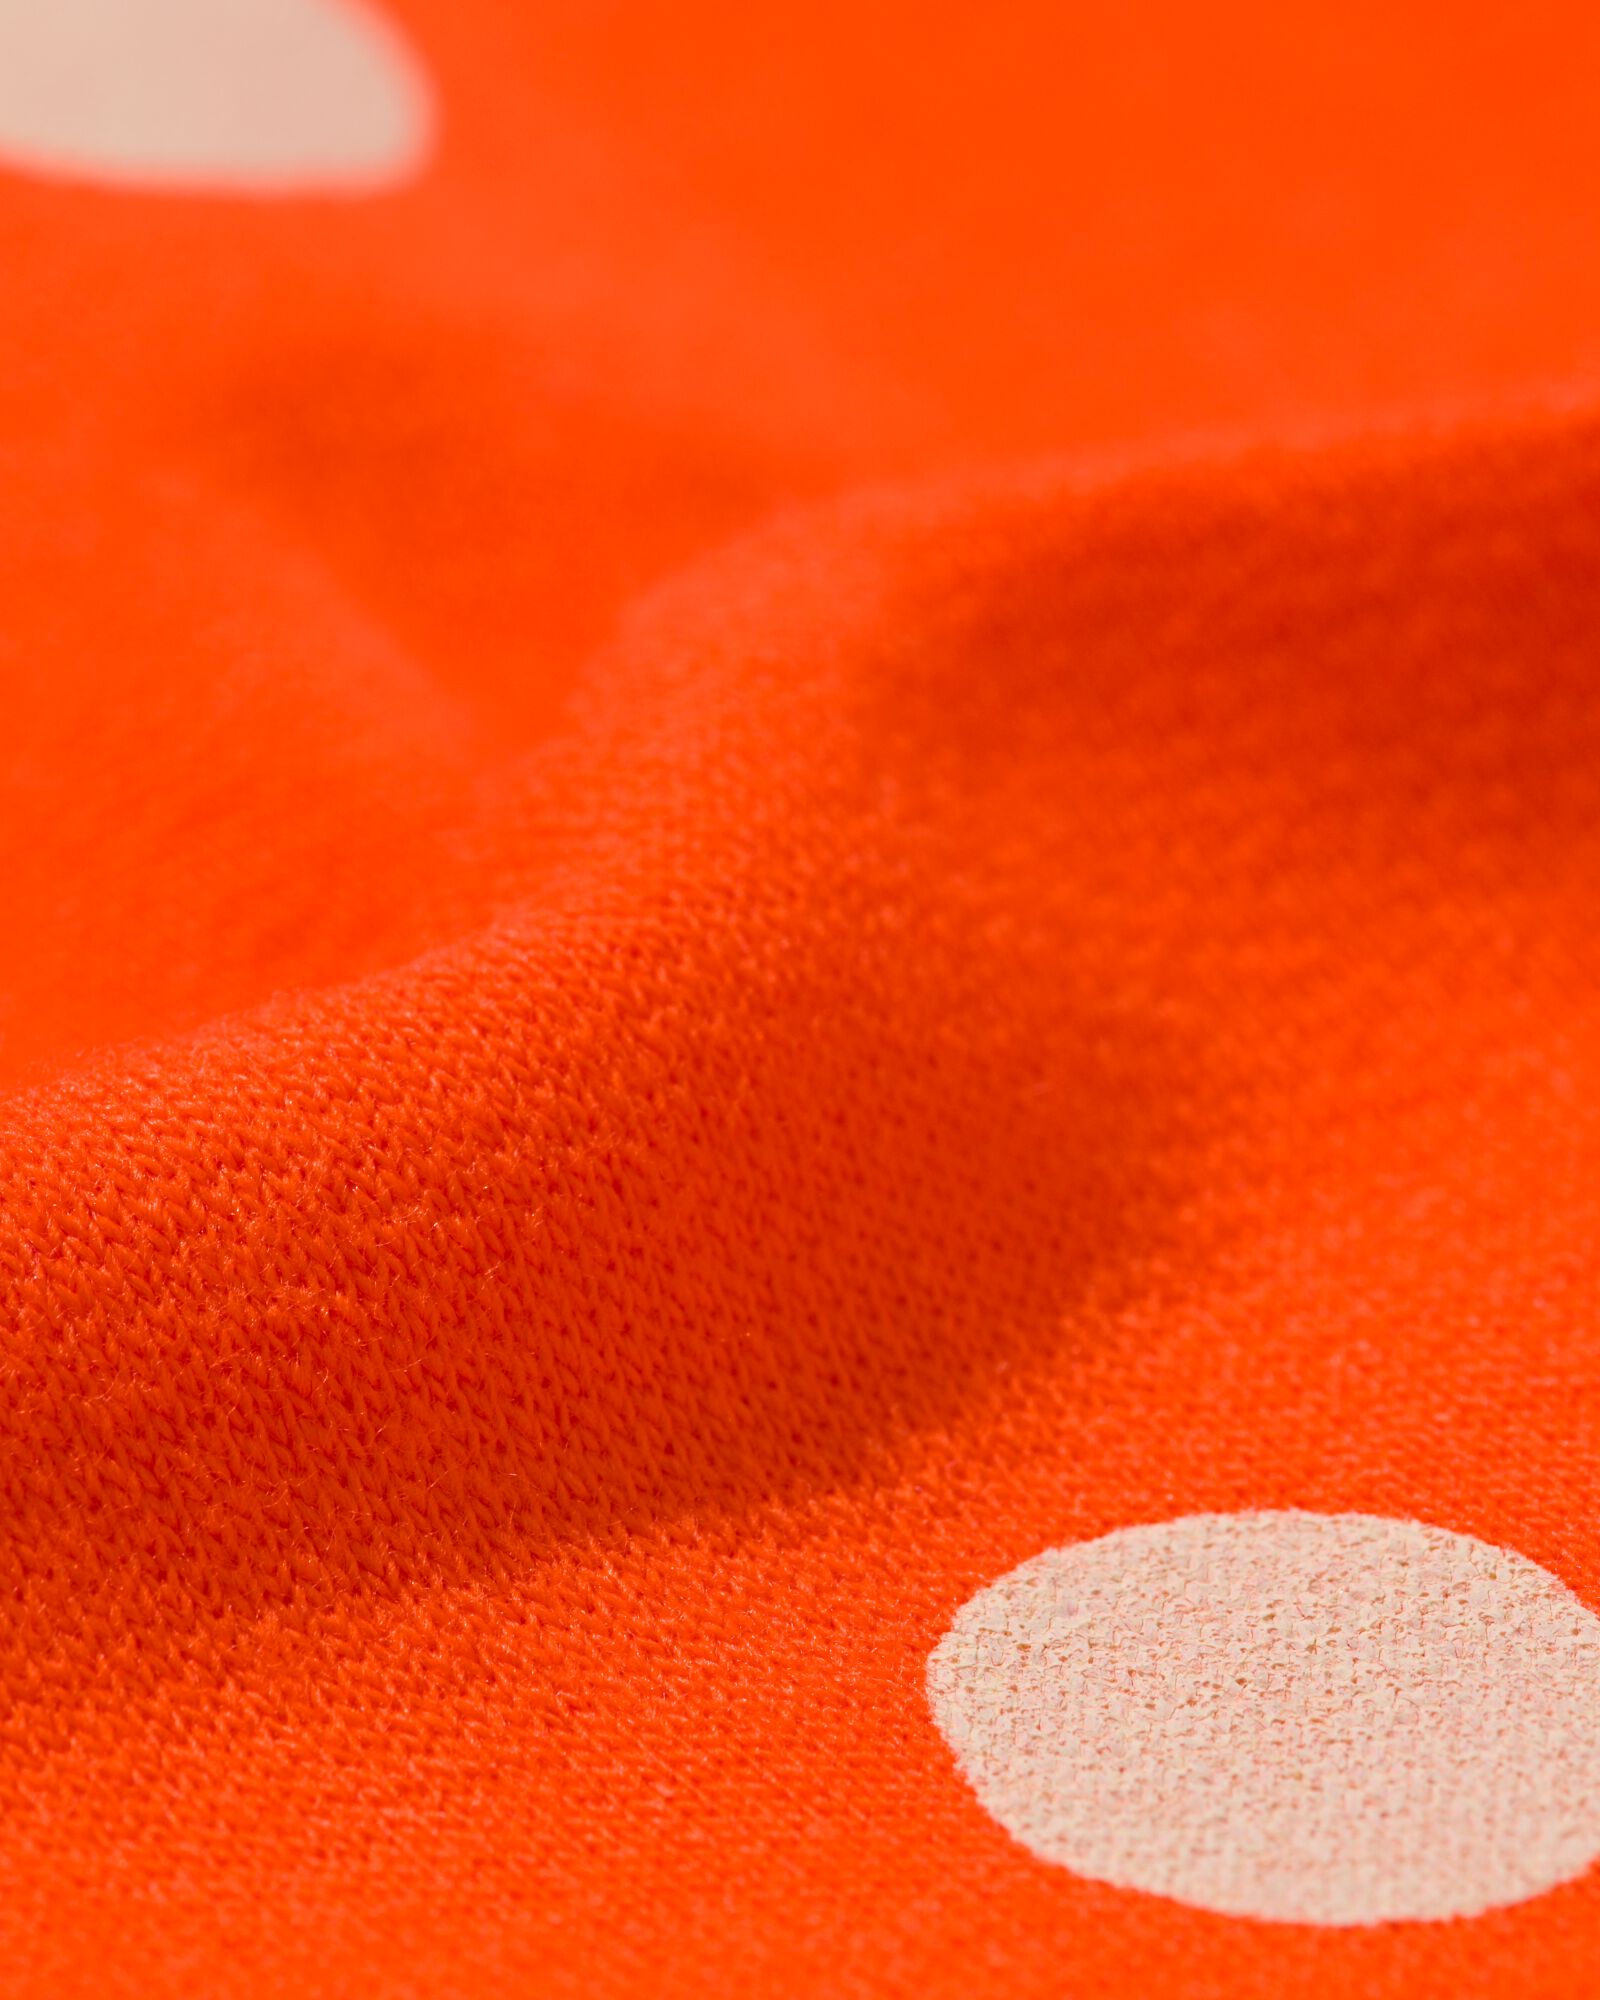 Baby-Sweatshirt, Punkte orange 92 - 33002456 - HEMA